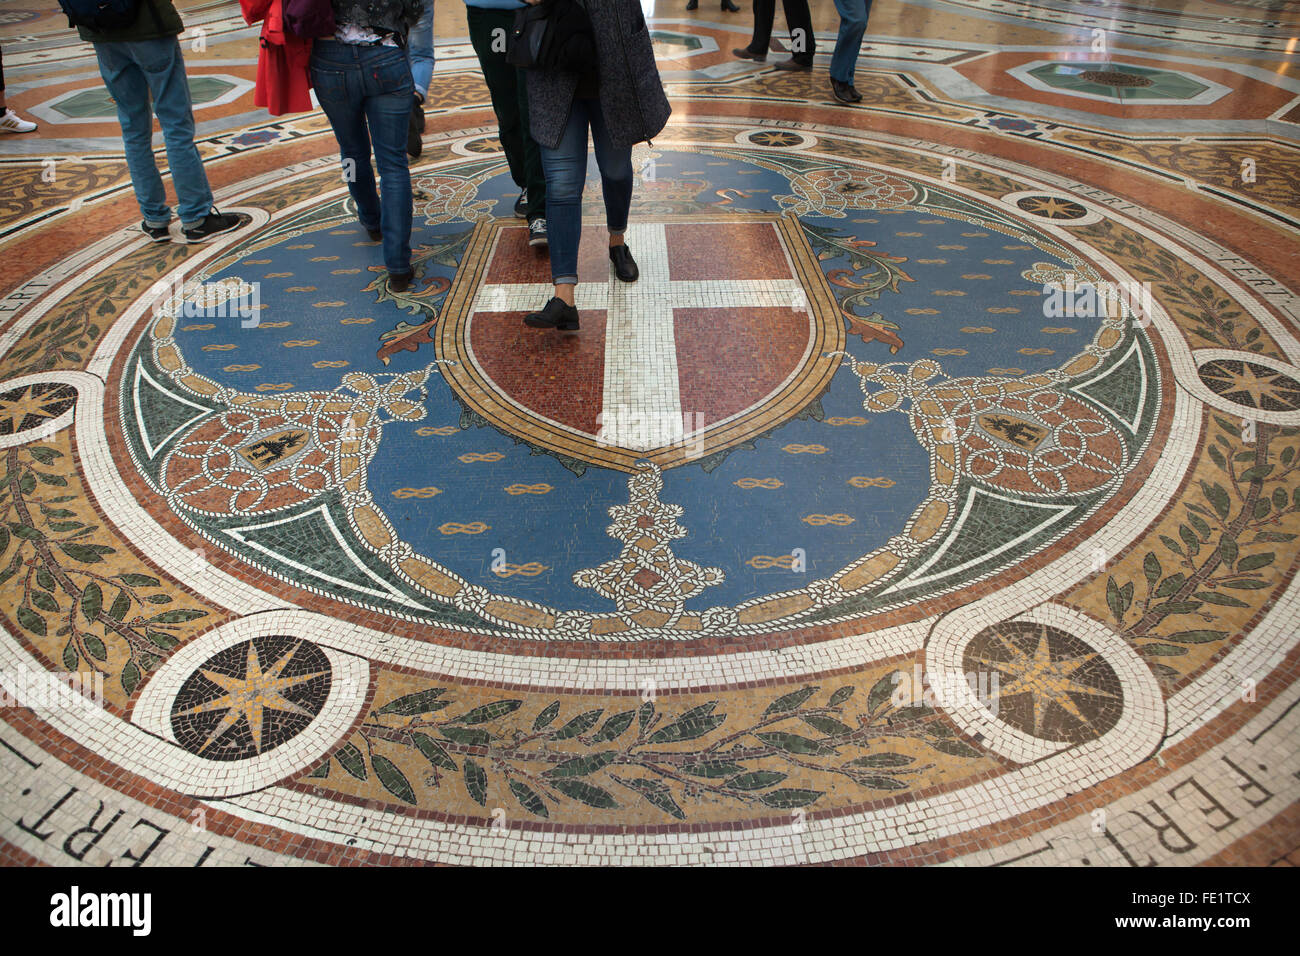 Armoiries de la Maison de Savoie représenté sur le sol de mosaïque dans la Galleria Vittorio Emanuele II à Milan, Lombardie, Italie. Banque D'Images